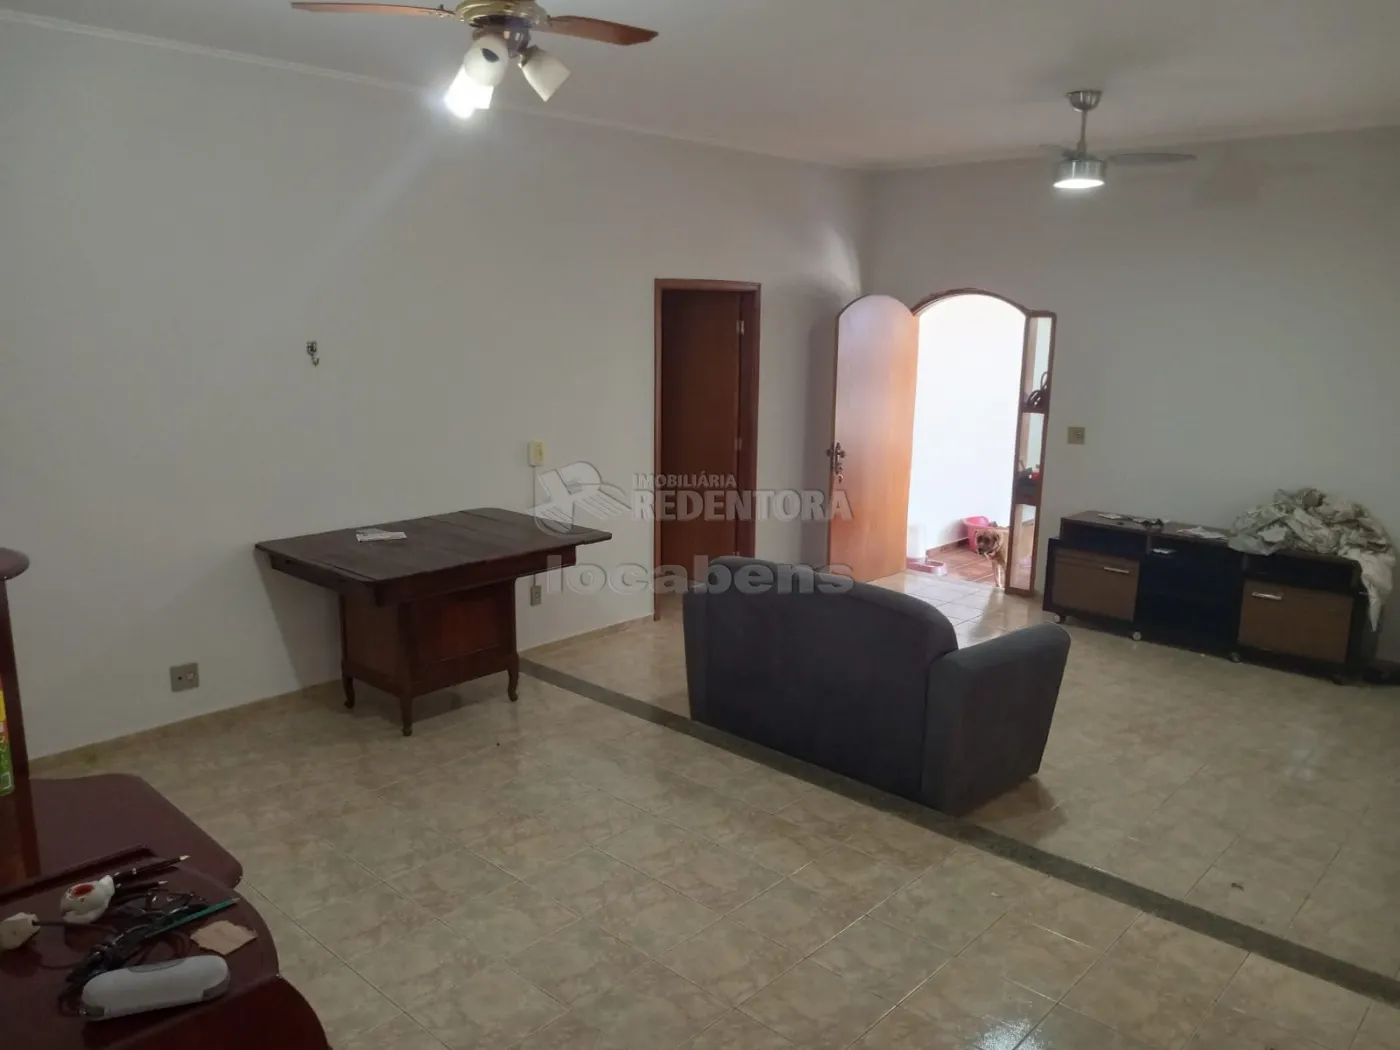 Comprar Casa / Padrão em São José do Rio Preto R$ 650.000,00 - Foto 5